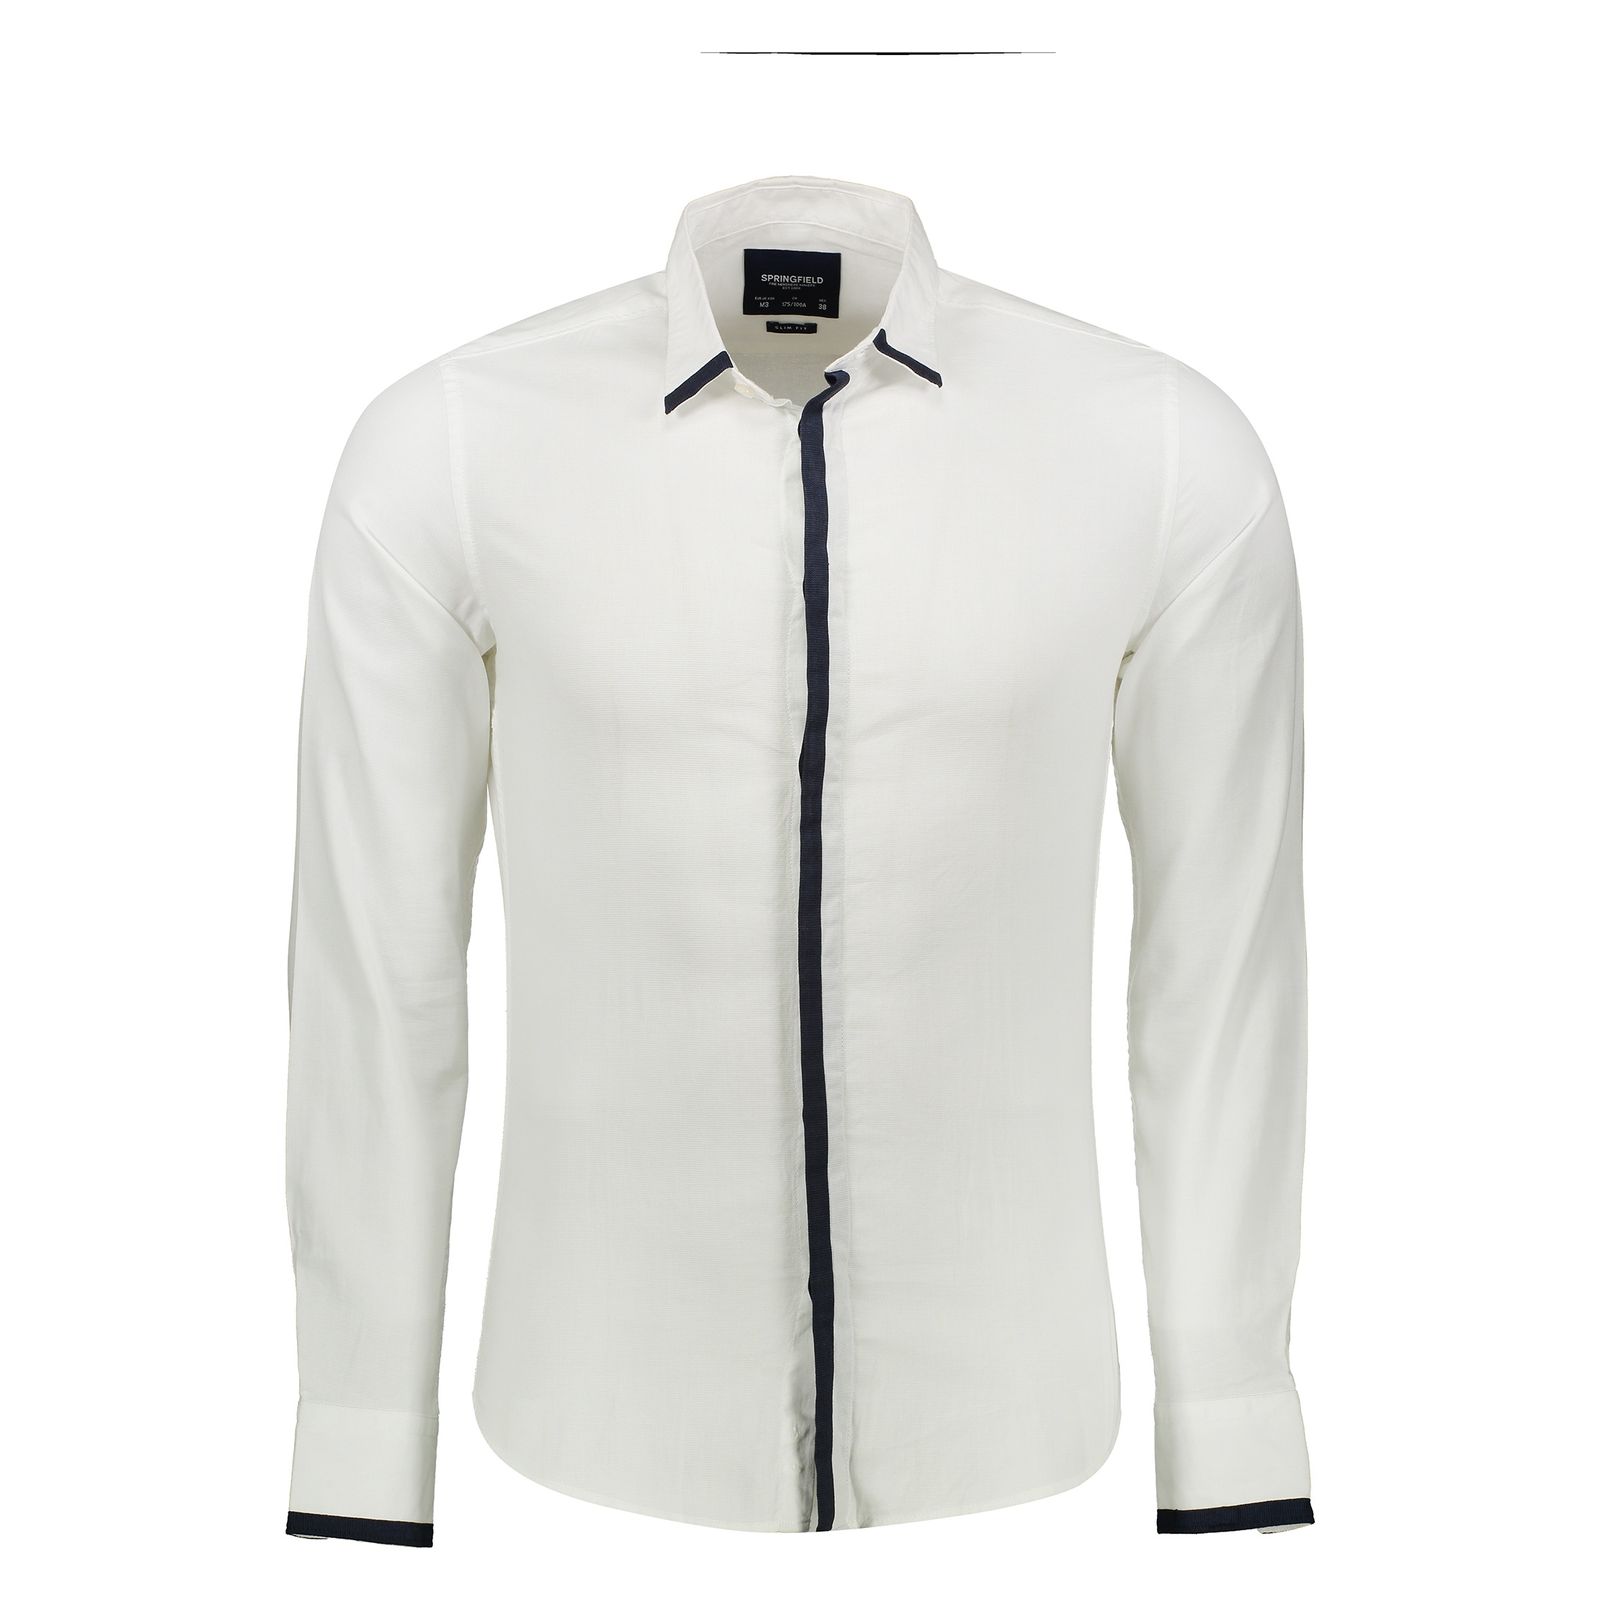 پیراهن مردانه اسپرینگ فیلد مدل 1506668-99 - سفید - 1